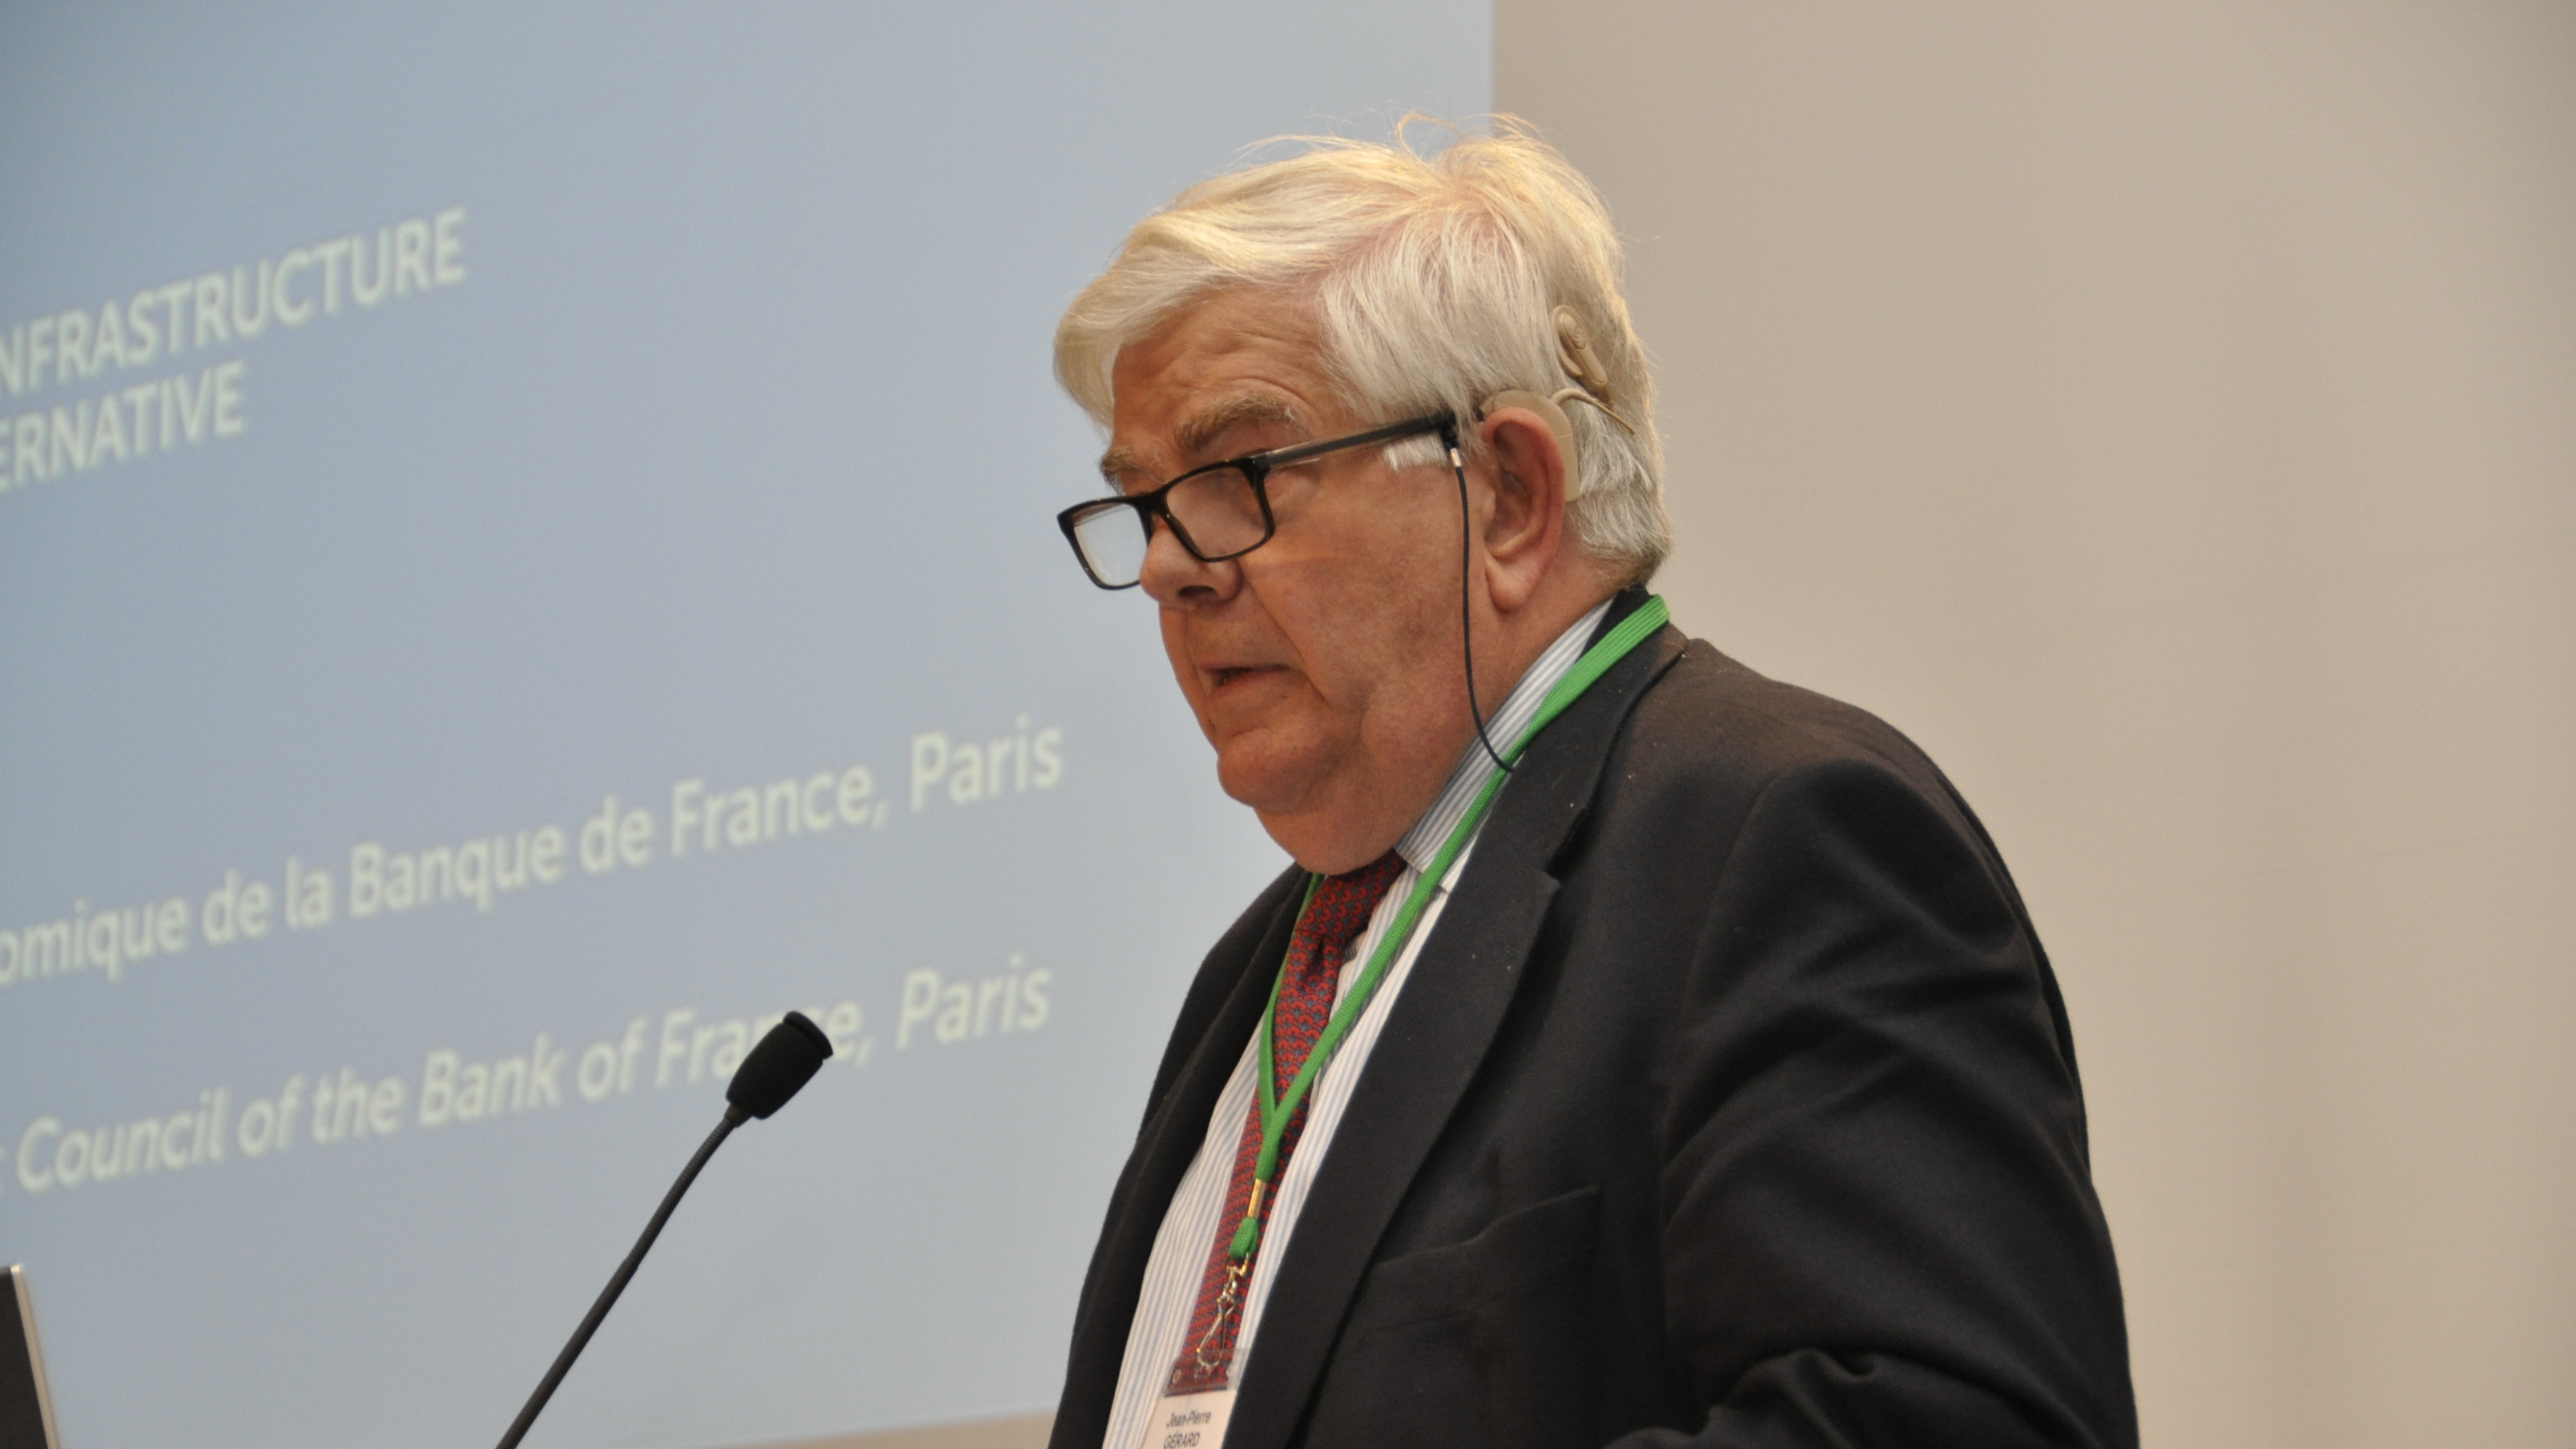 Jean-Pierre Gérard : rôle moteur de l’Etat dans les grandes infrastructures, mais échec de l’économie administrée